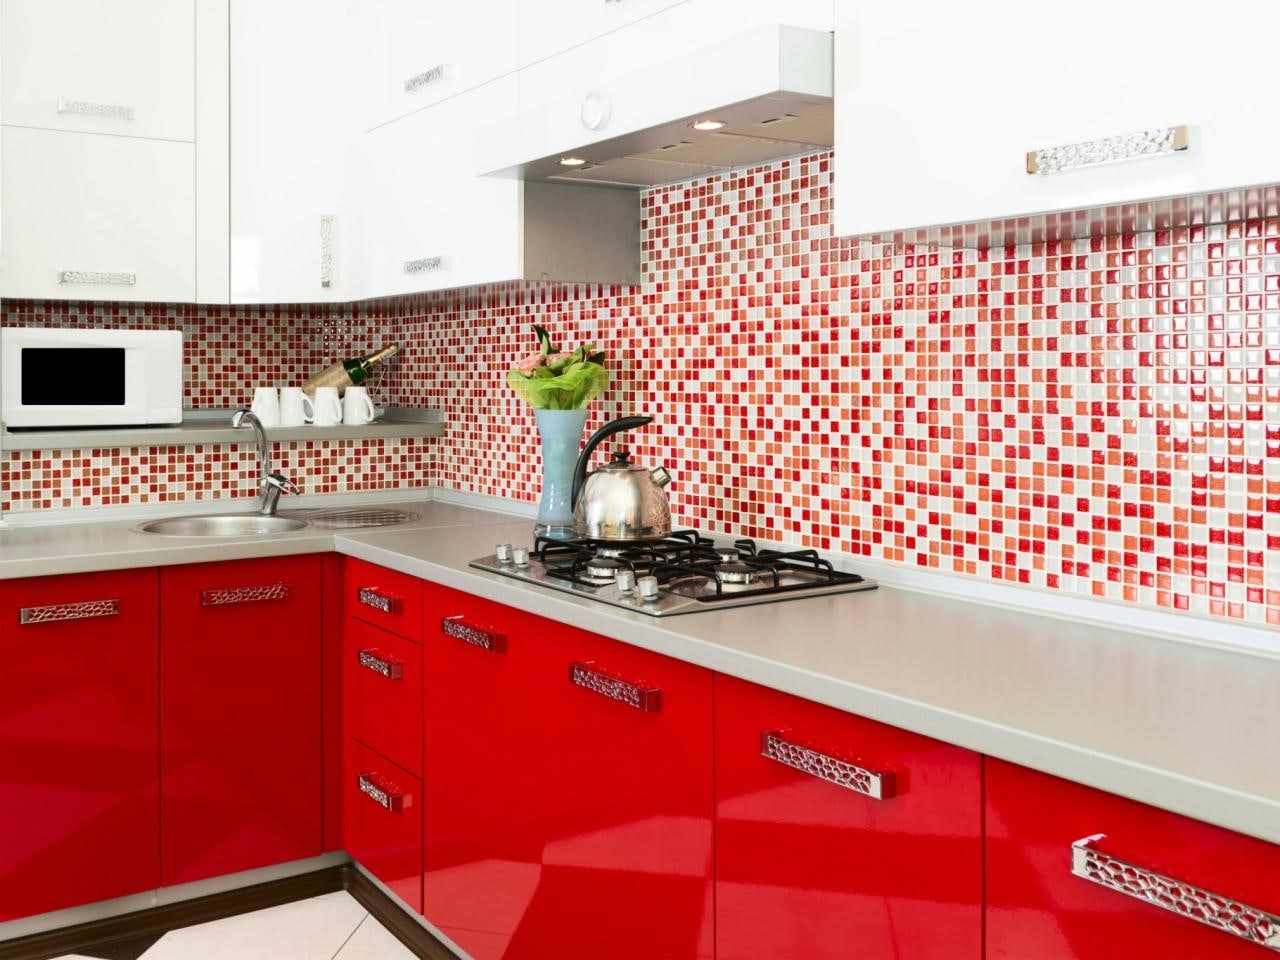 vörös konyha világos kialakításának változata